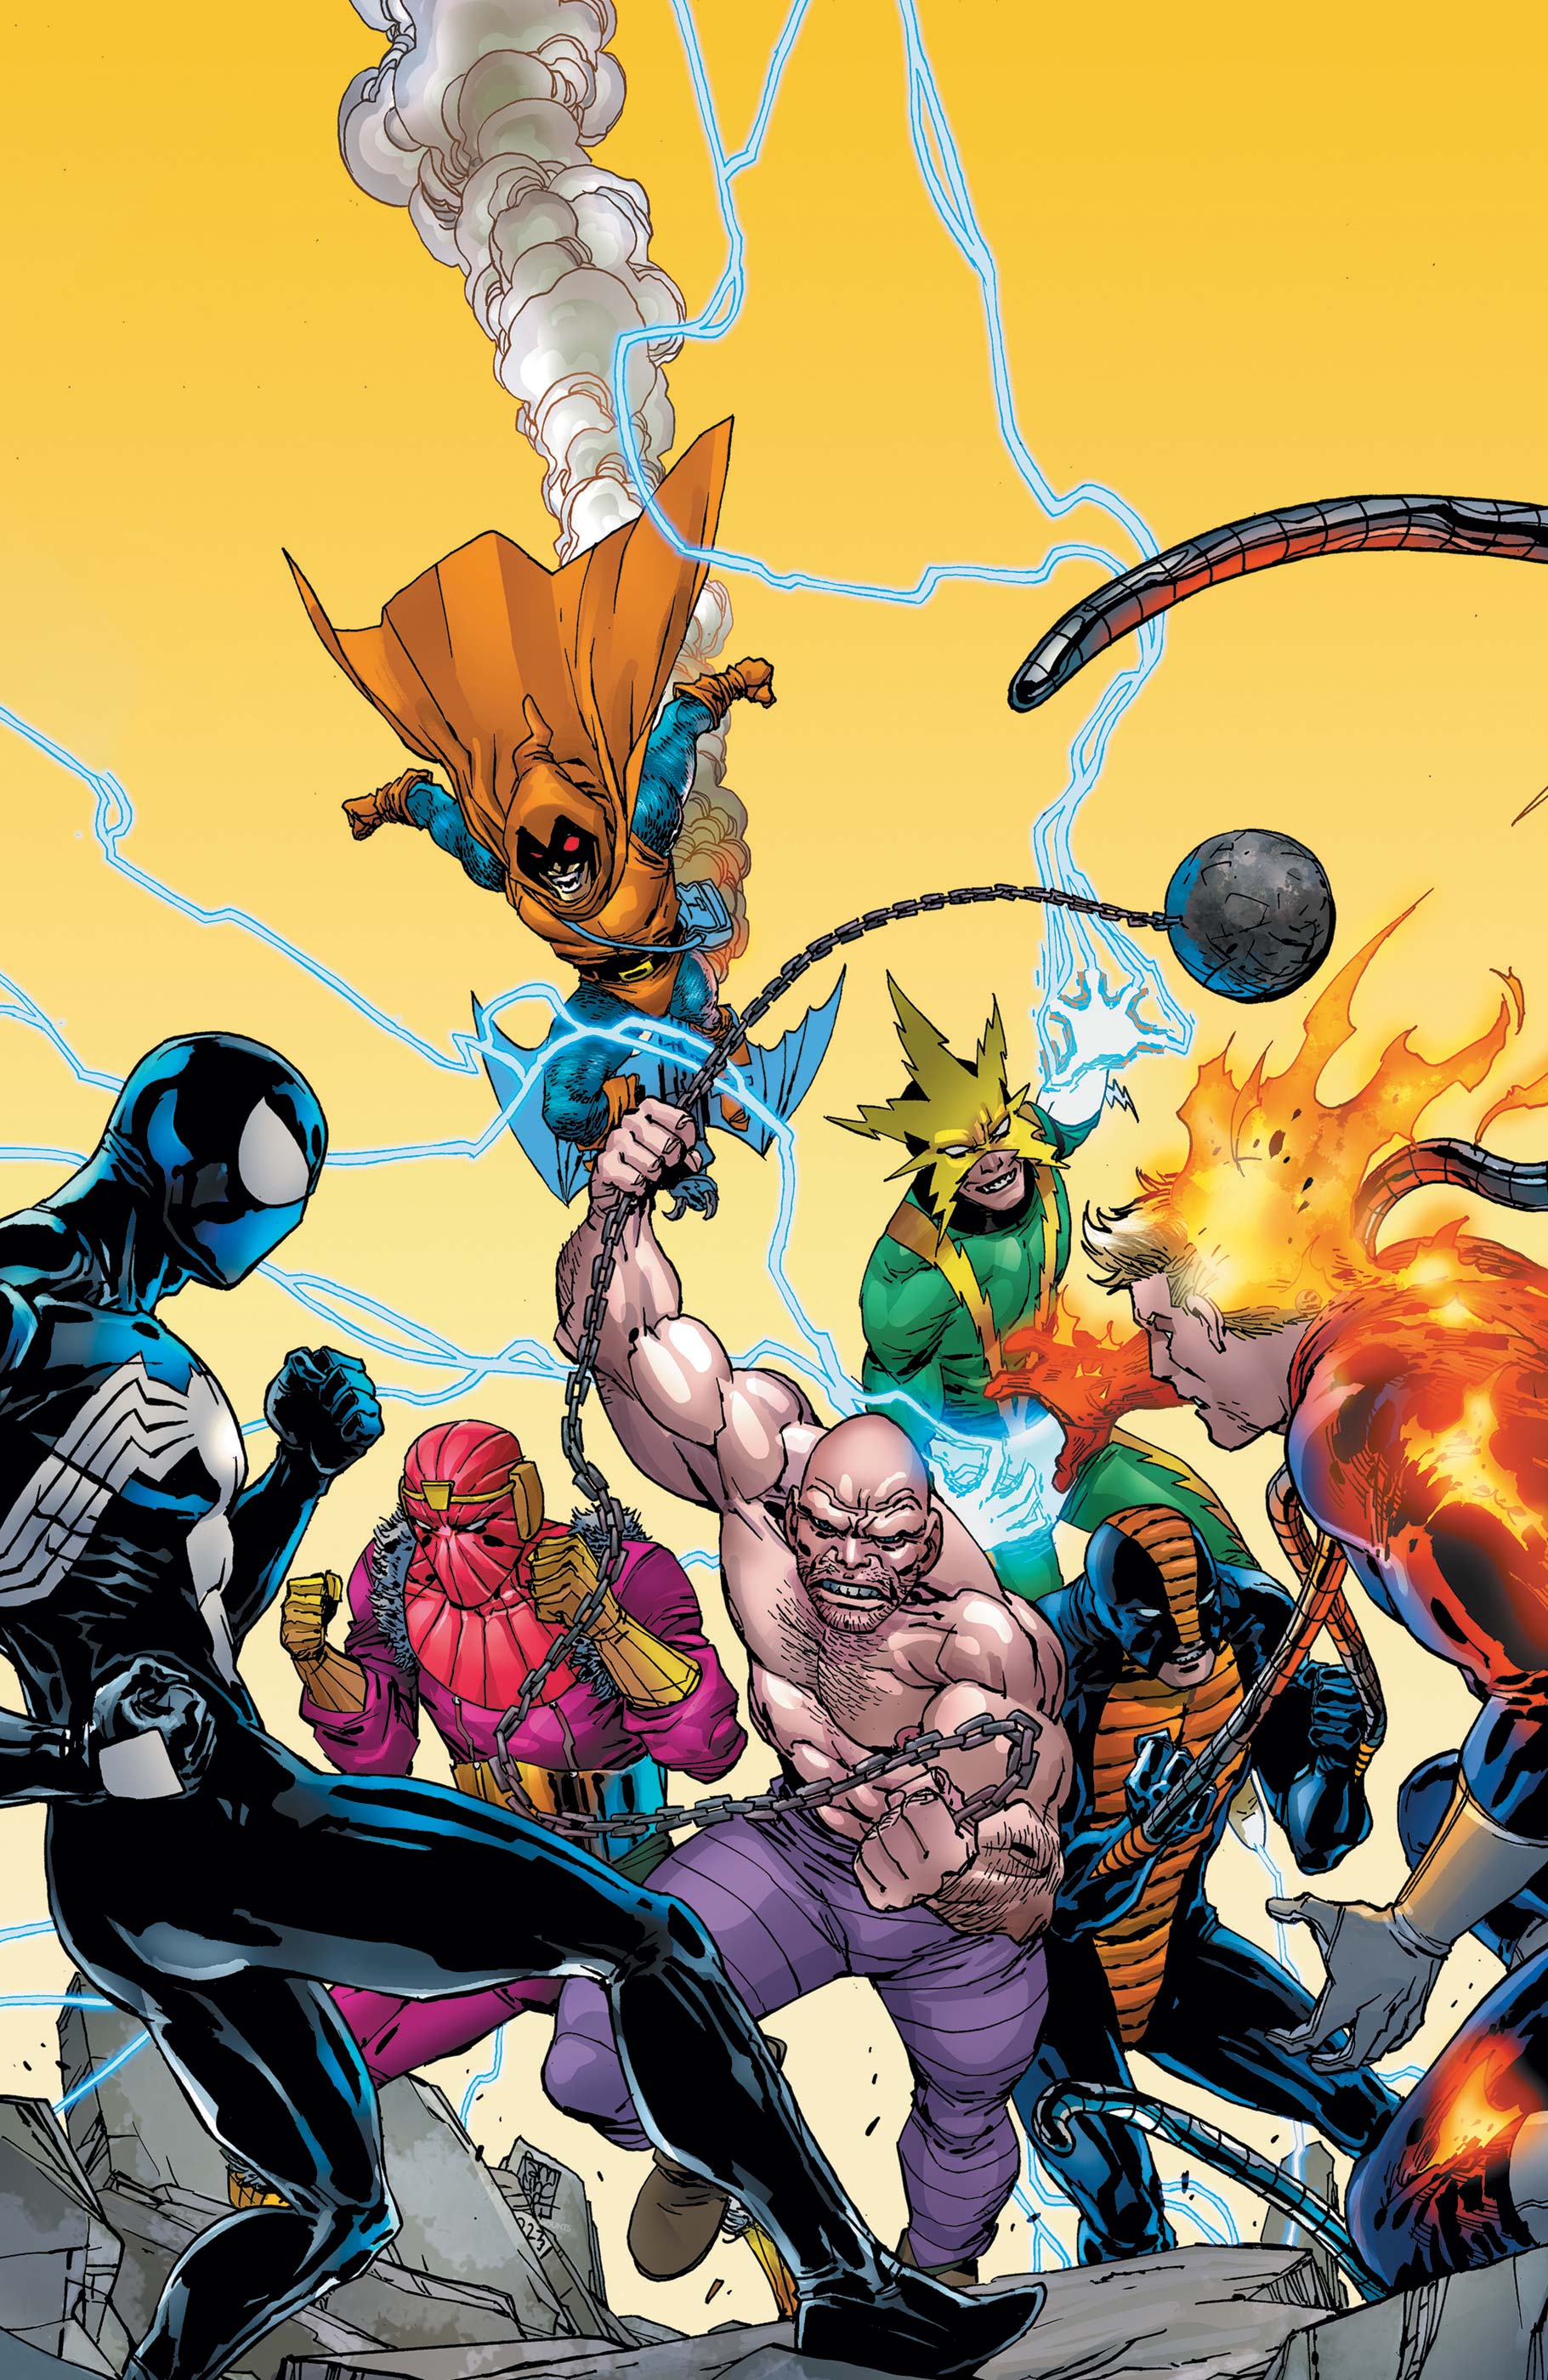 Marvel Super Heroes Secret Wars: Battleworld (2023) #2 (Variant)